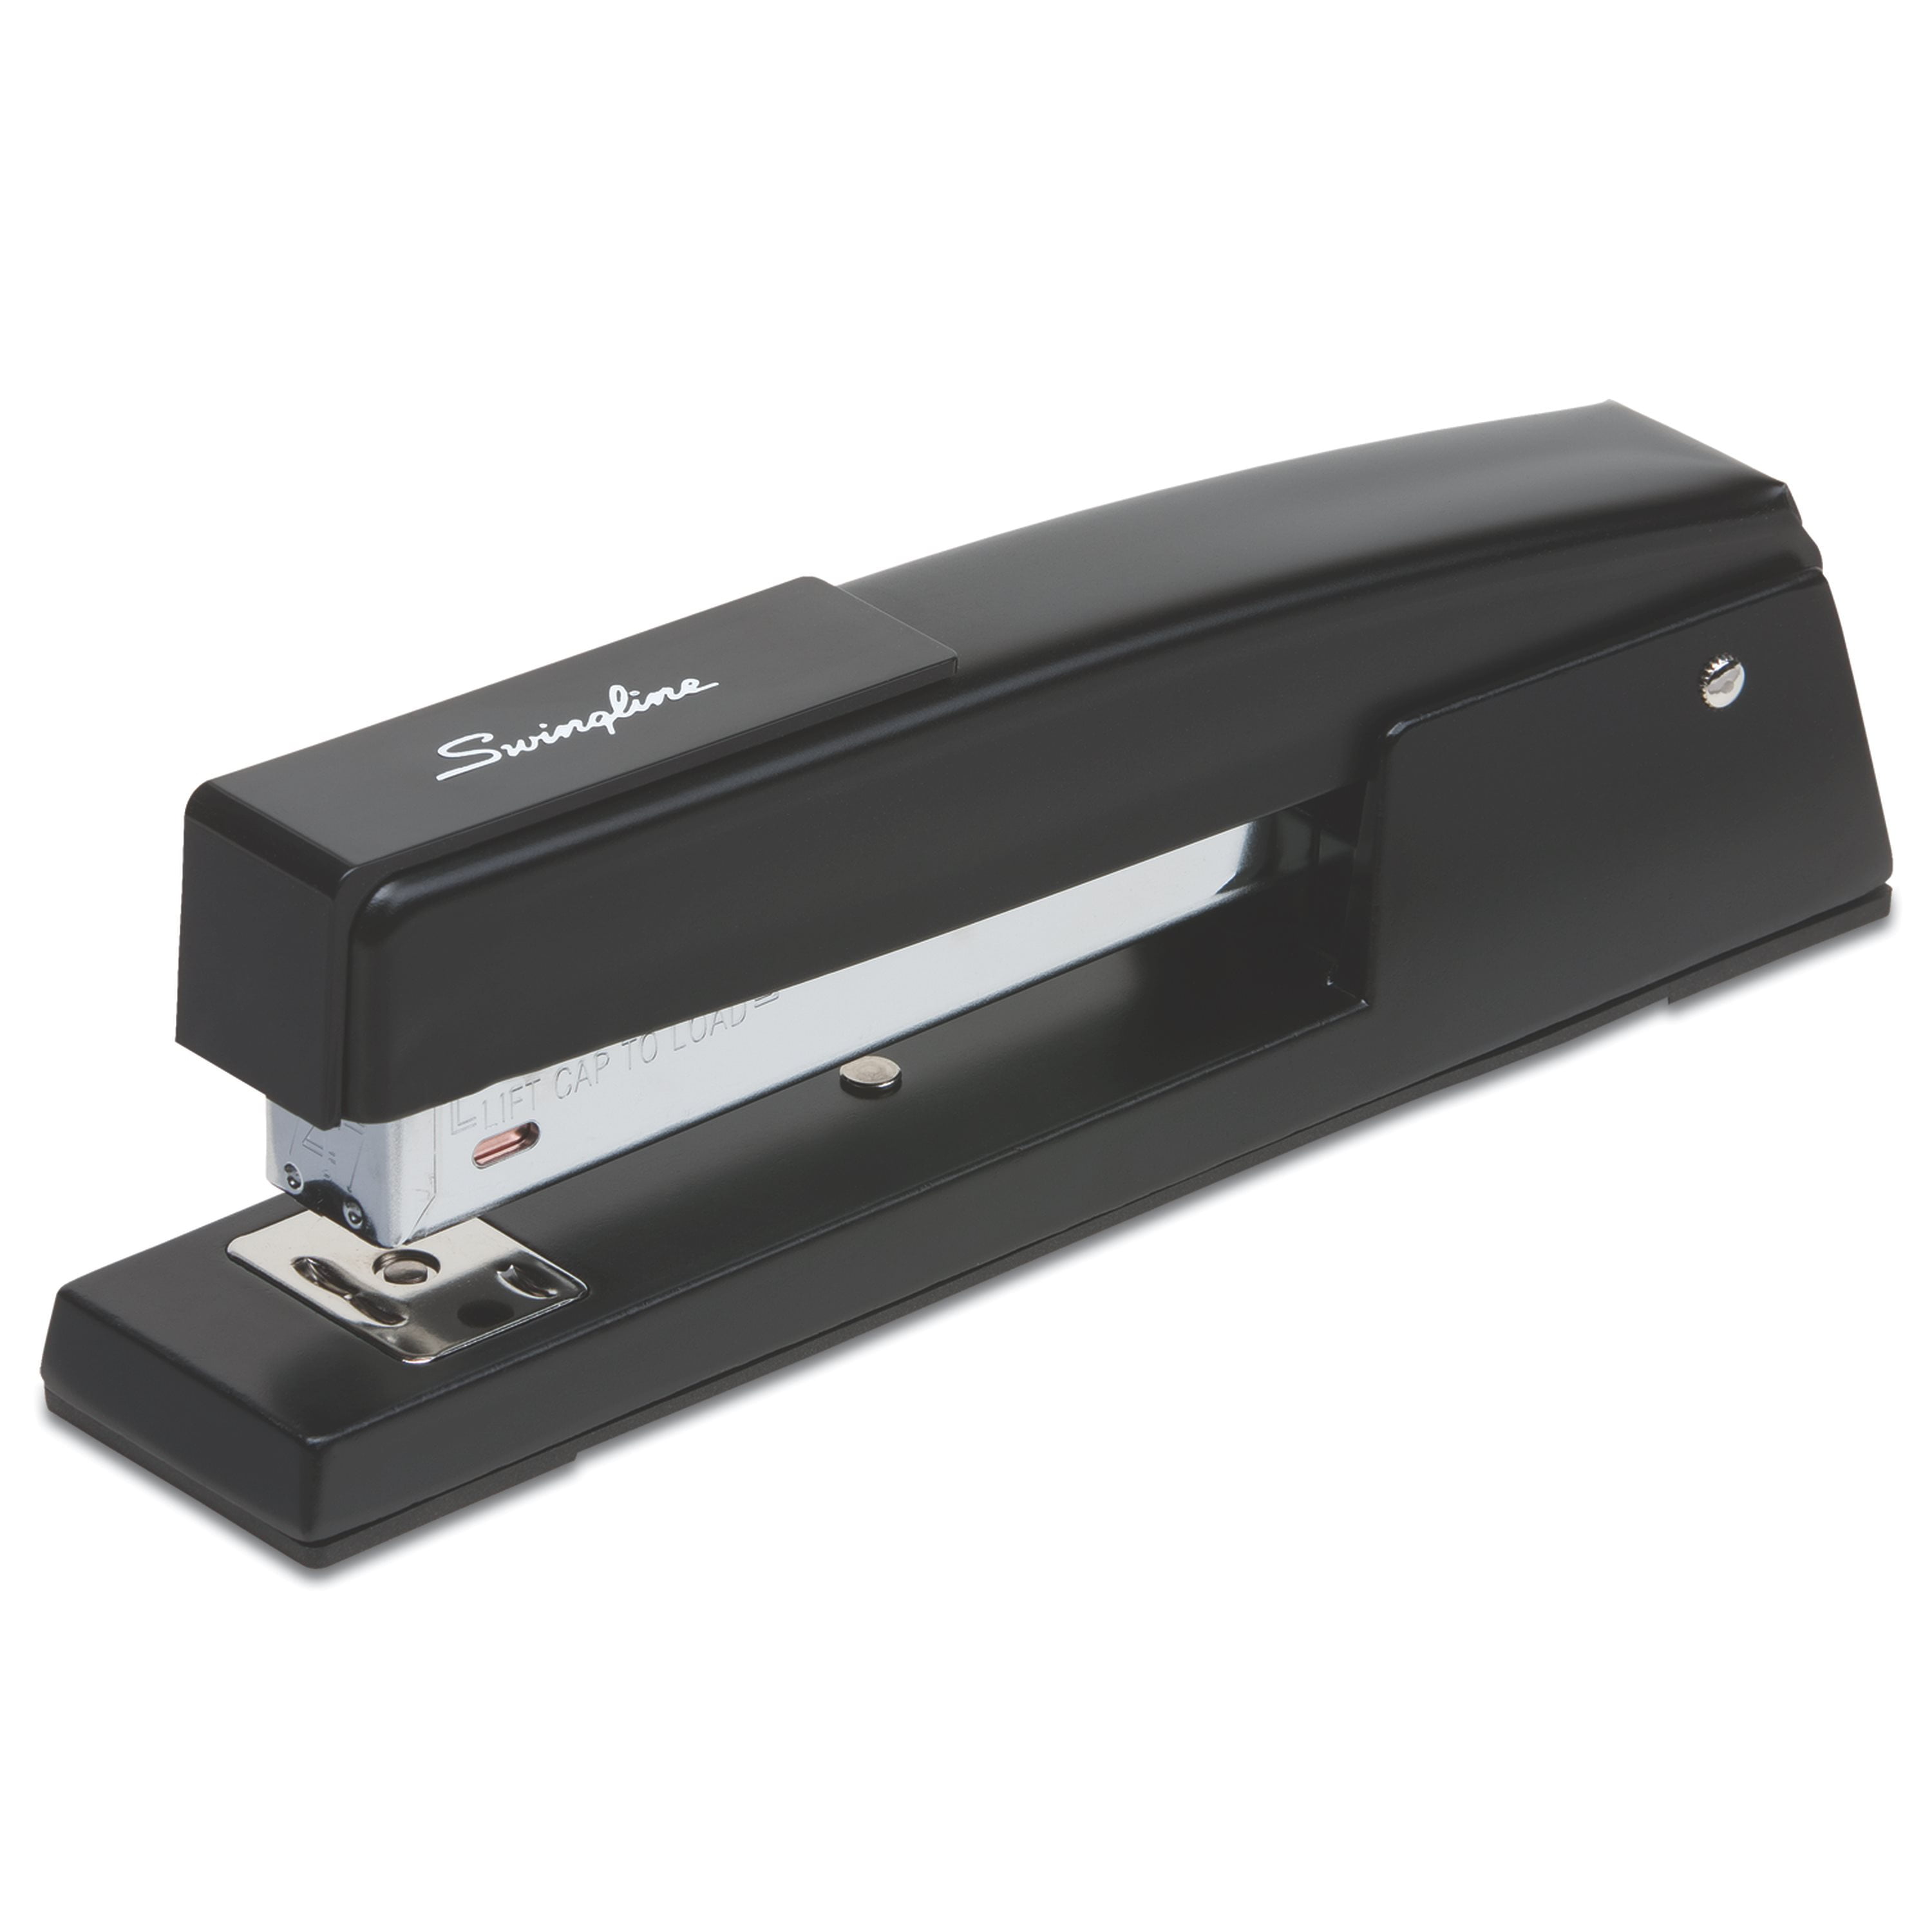 redline stapler